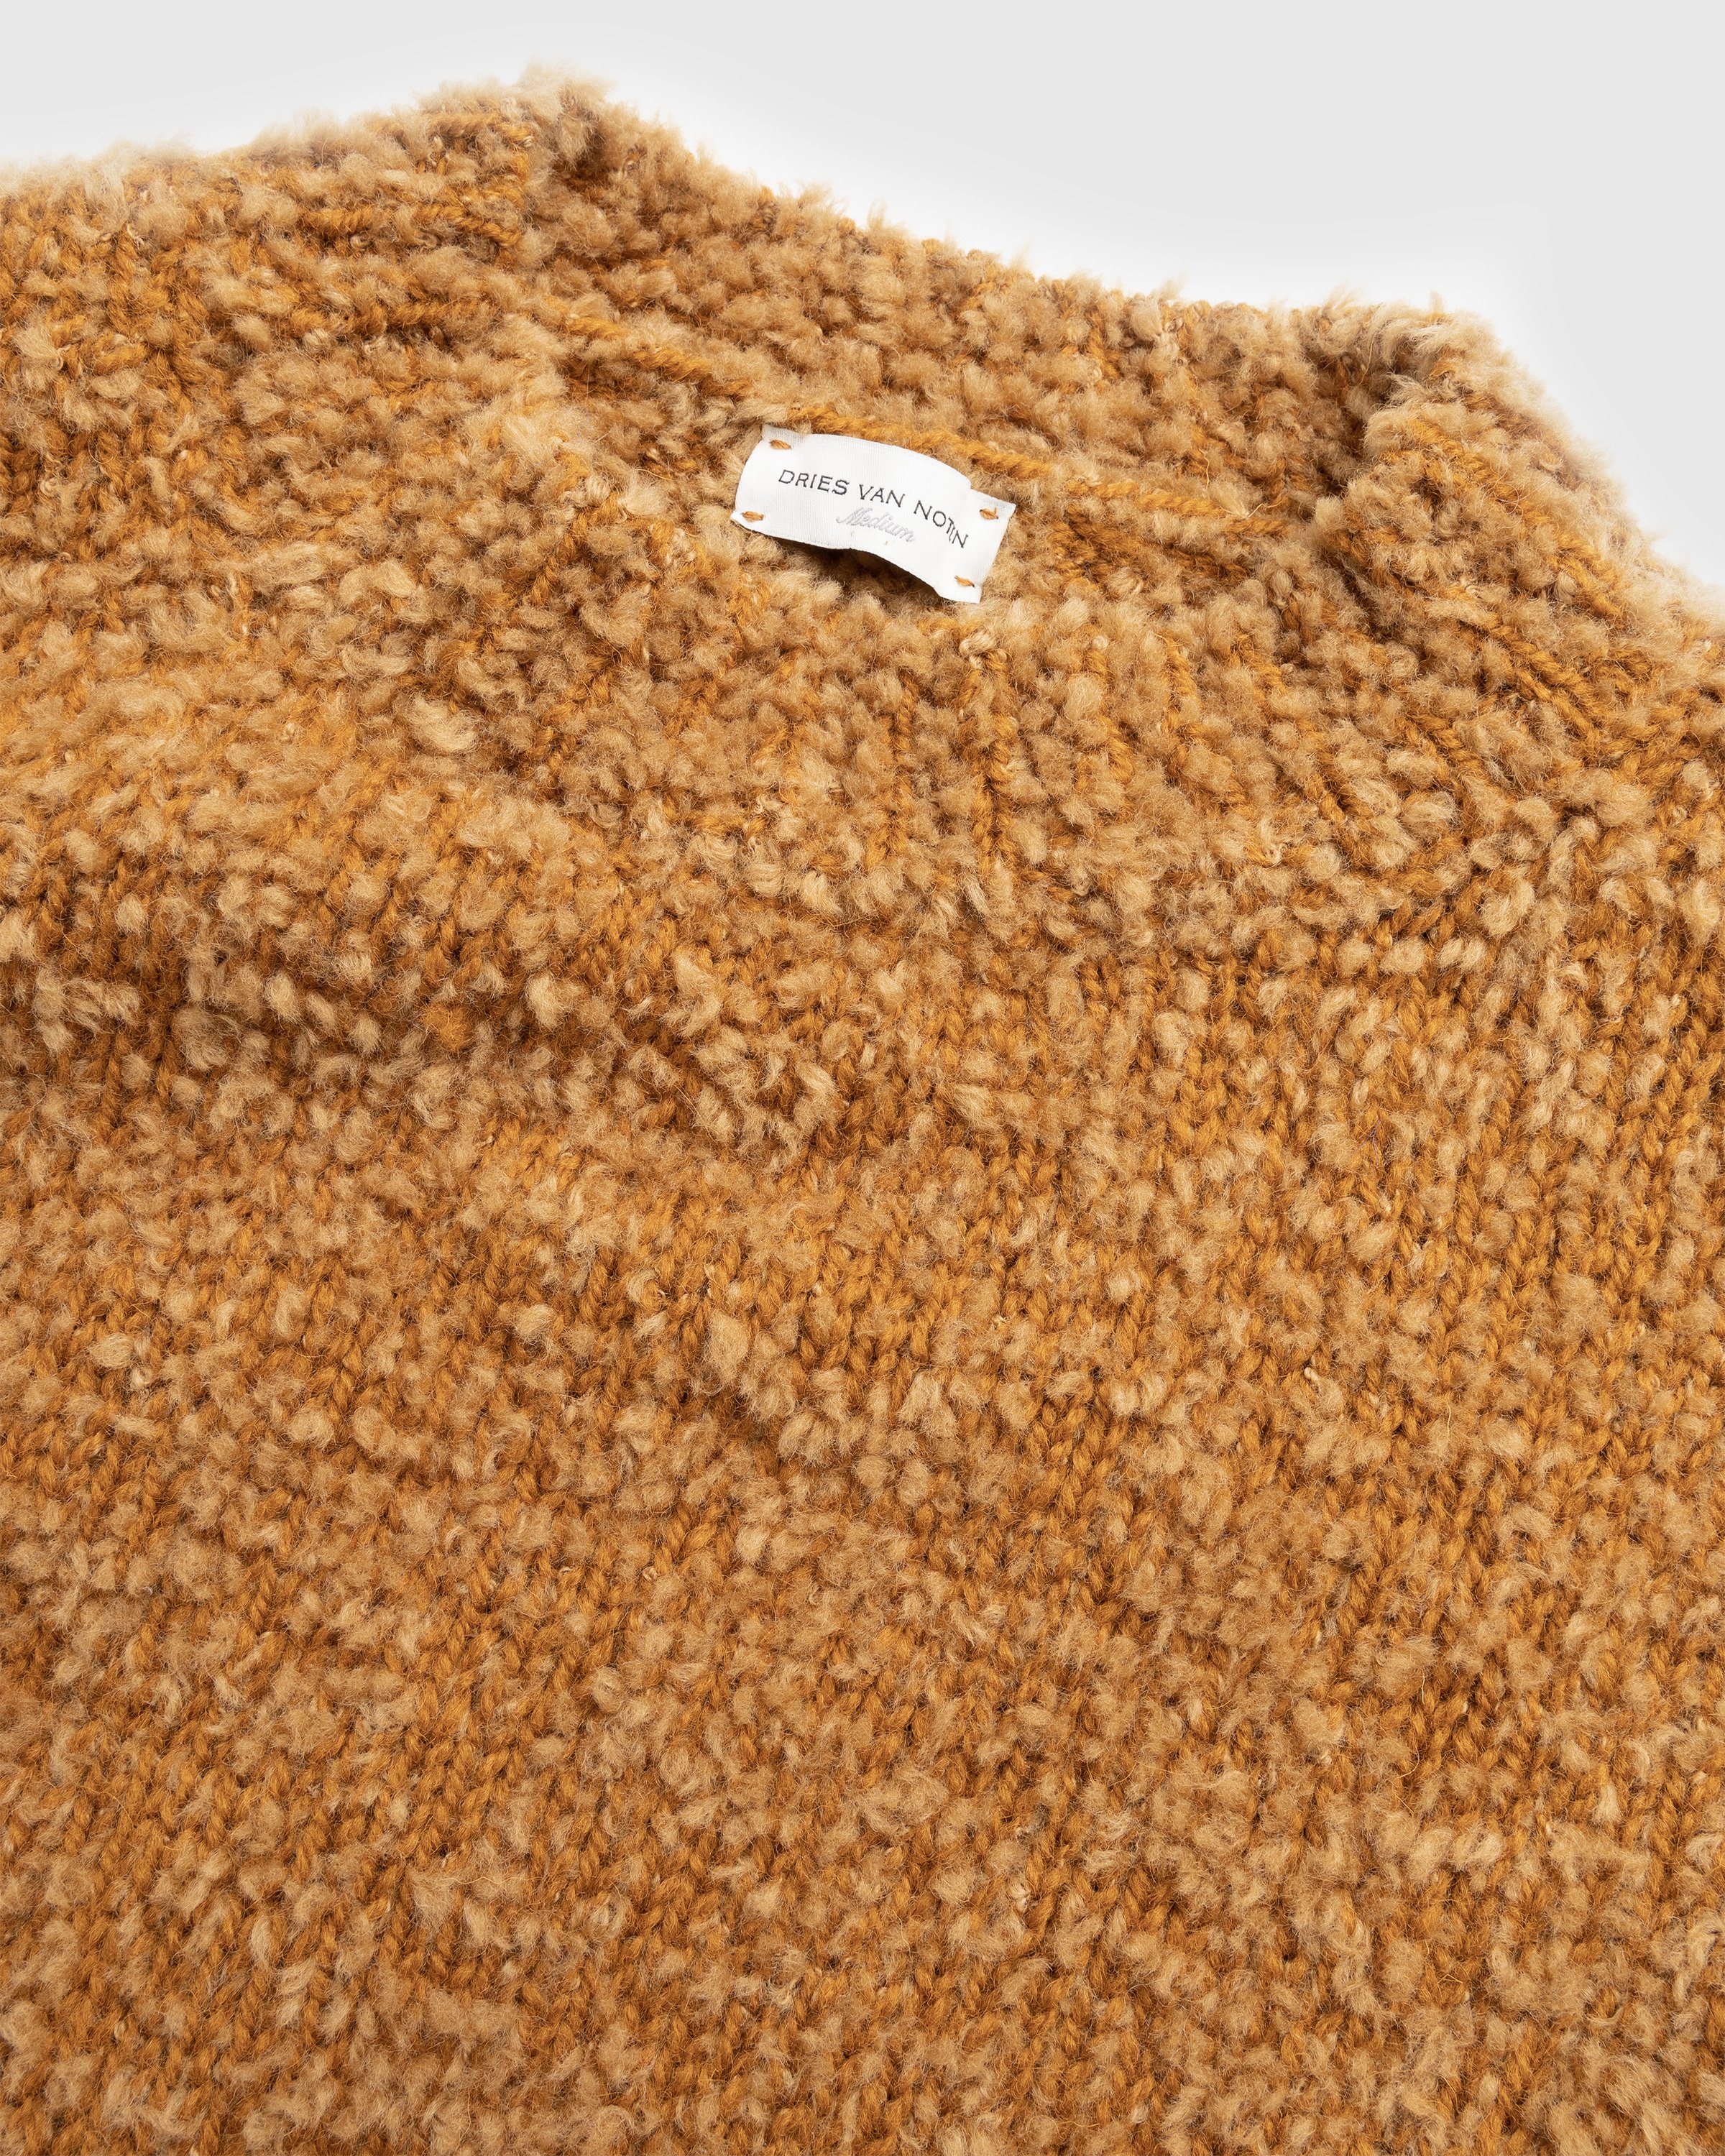 Dries van Noten - Merice Knit Camel - Clothing - Brown - Image 5